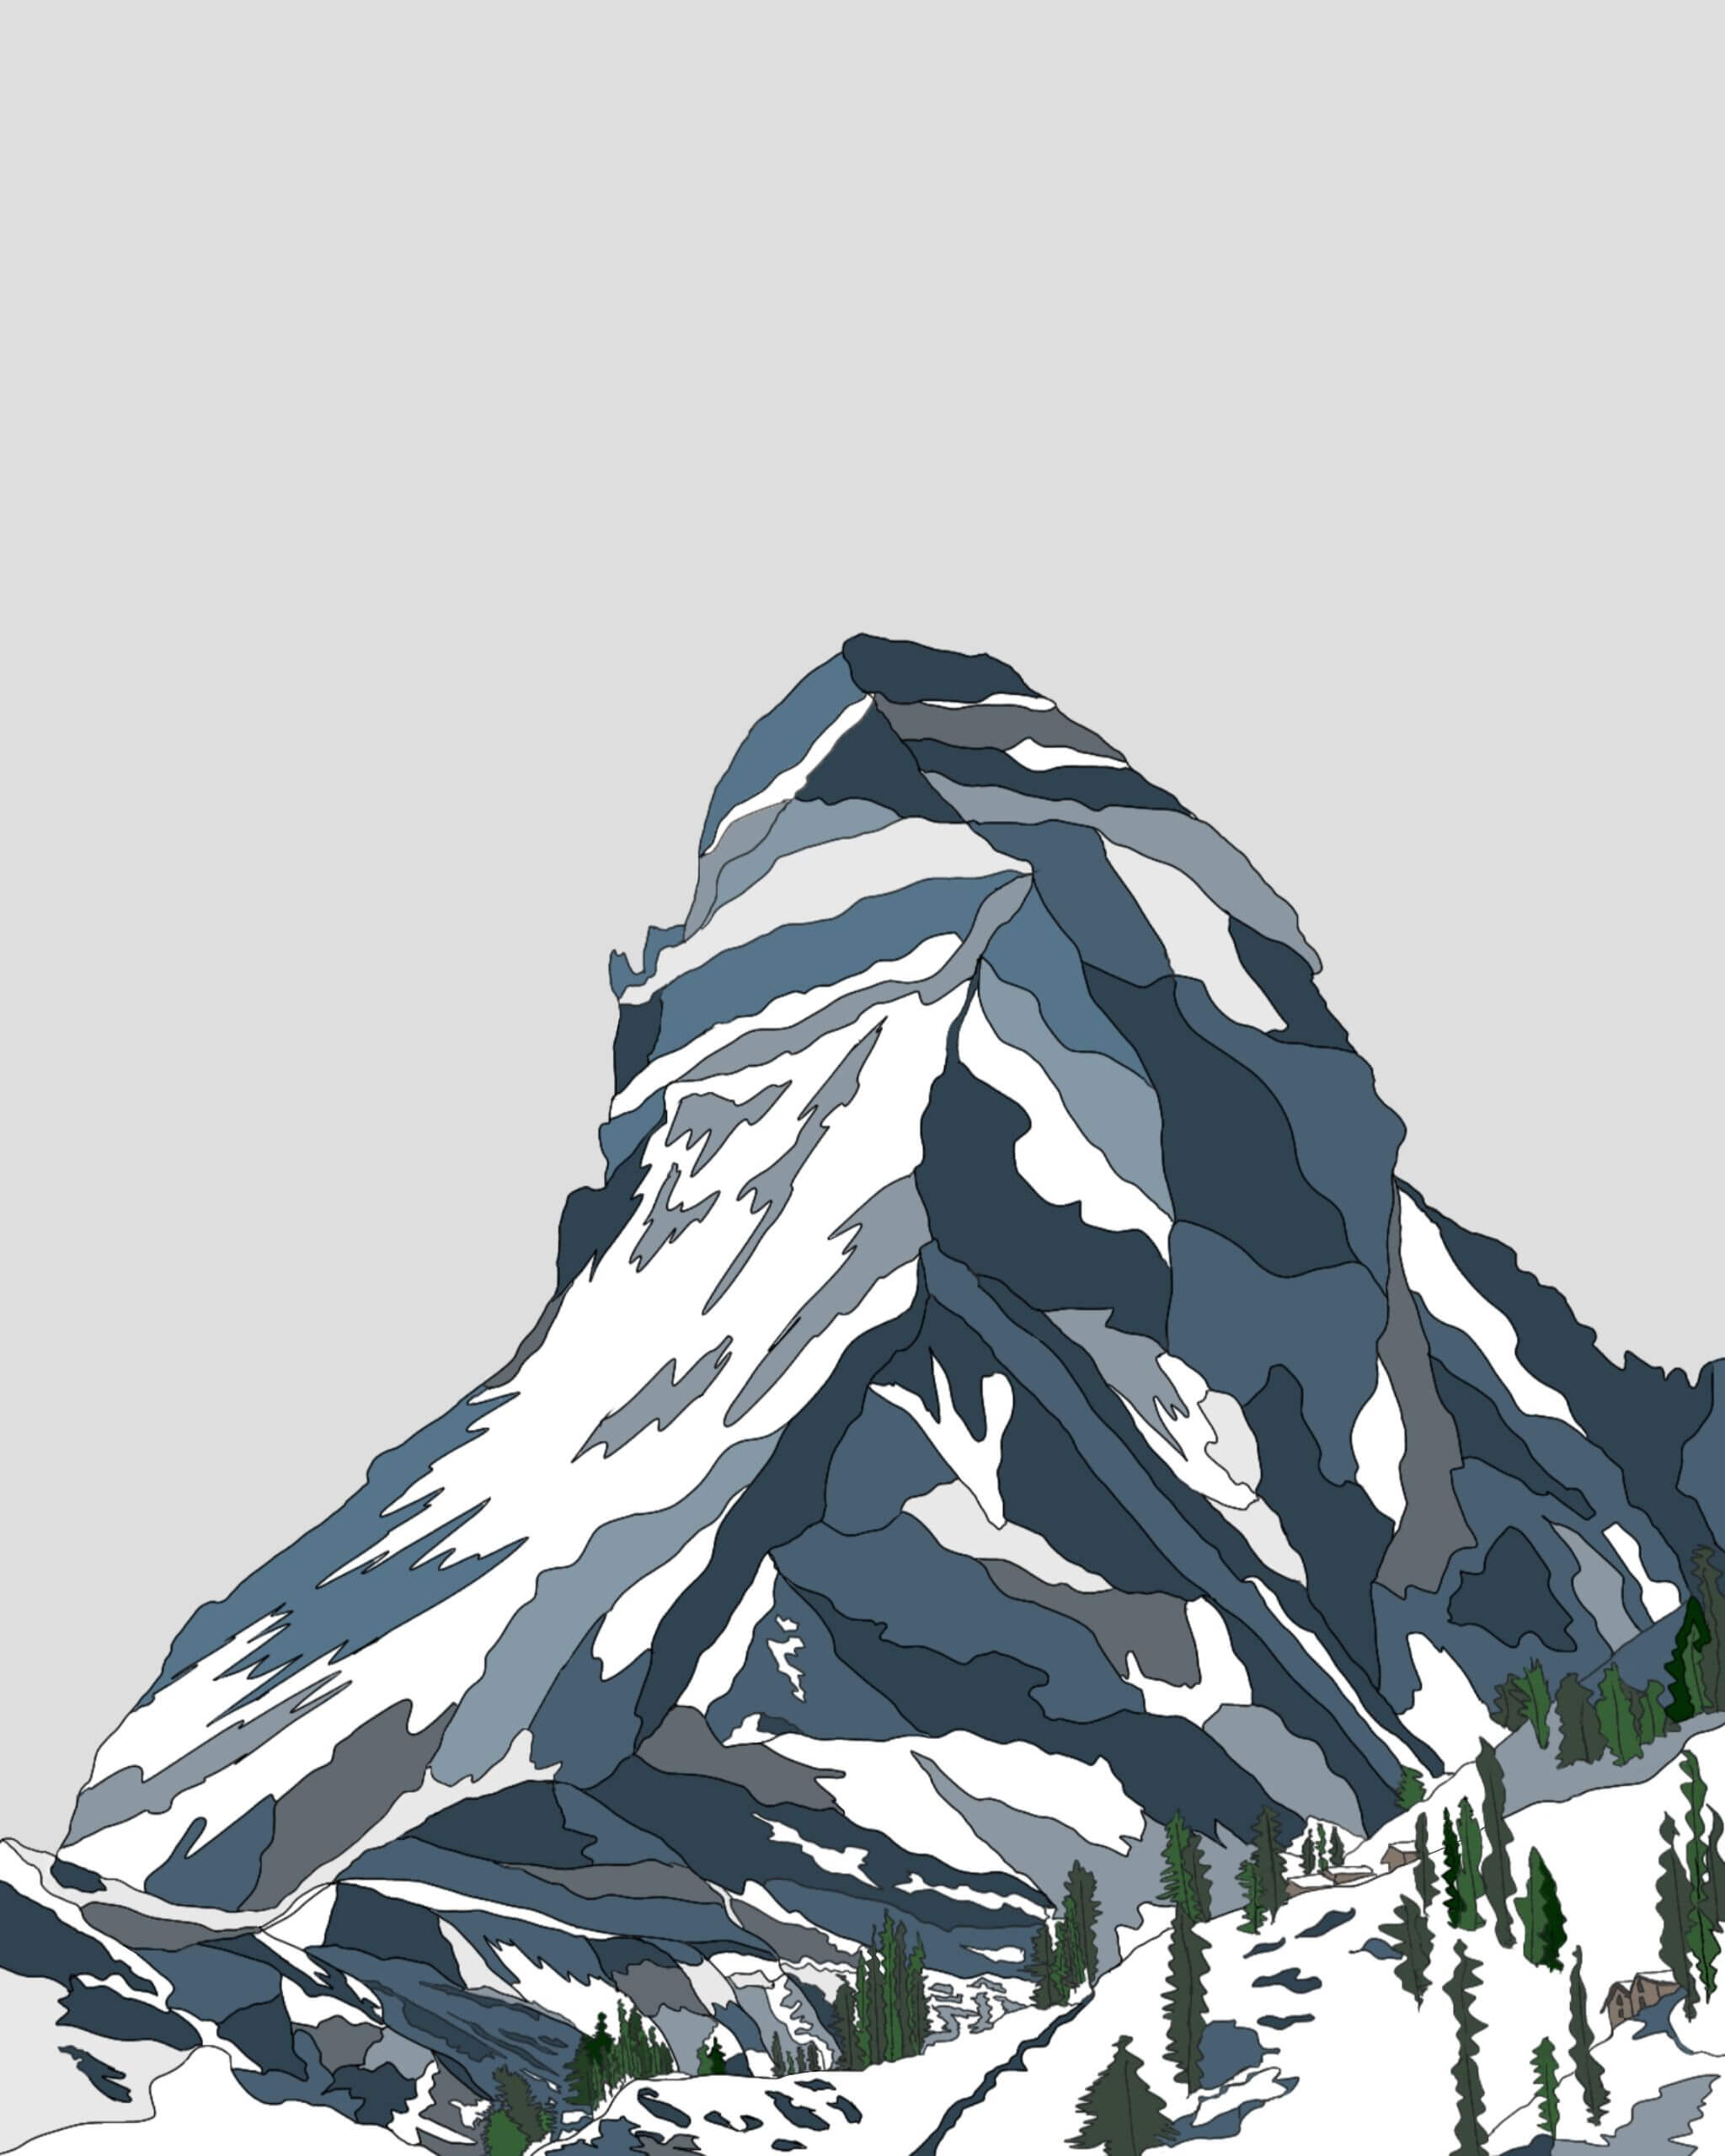 The Matterhorn in winter